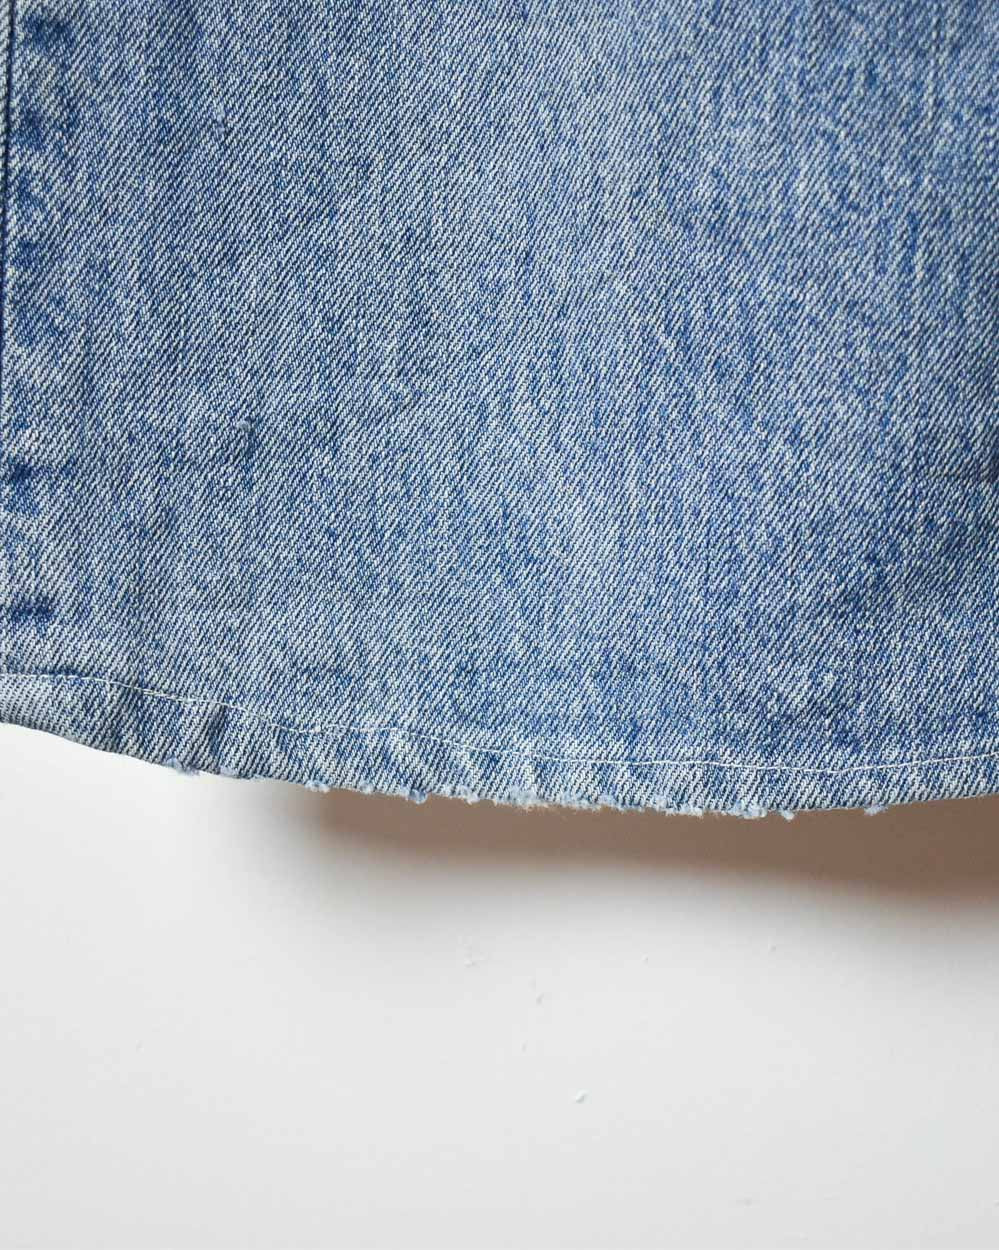 Blue Levi's 501 Jeans - W38 L38